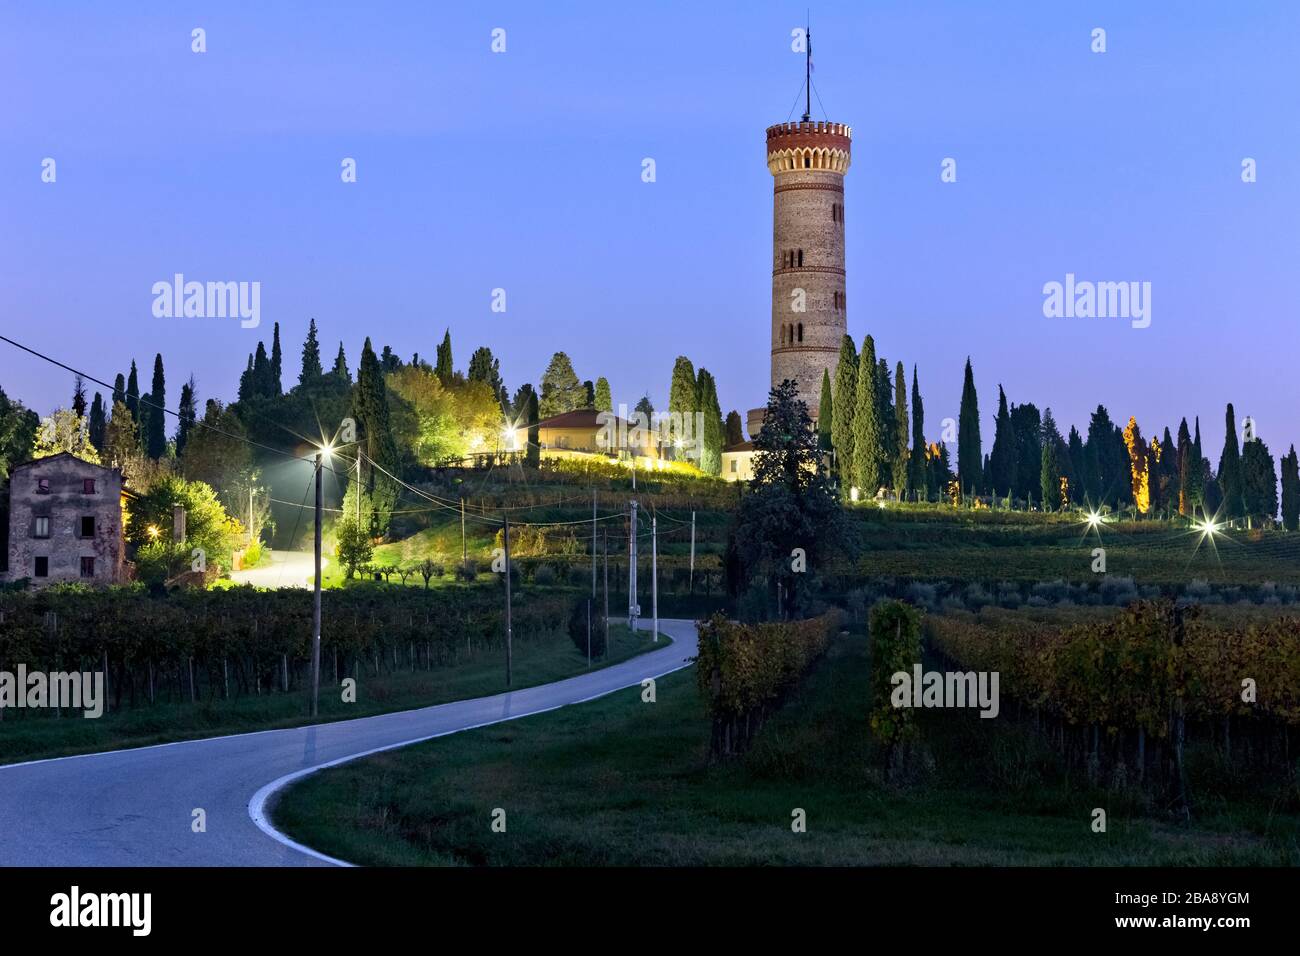 The monumental tower of San Martino della Battaglia celebrates the Italian Risorgimento. Desenzano del Garda, Brescia province, Lombardy, Italy. Stock Photo